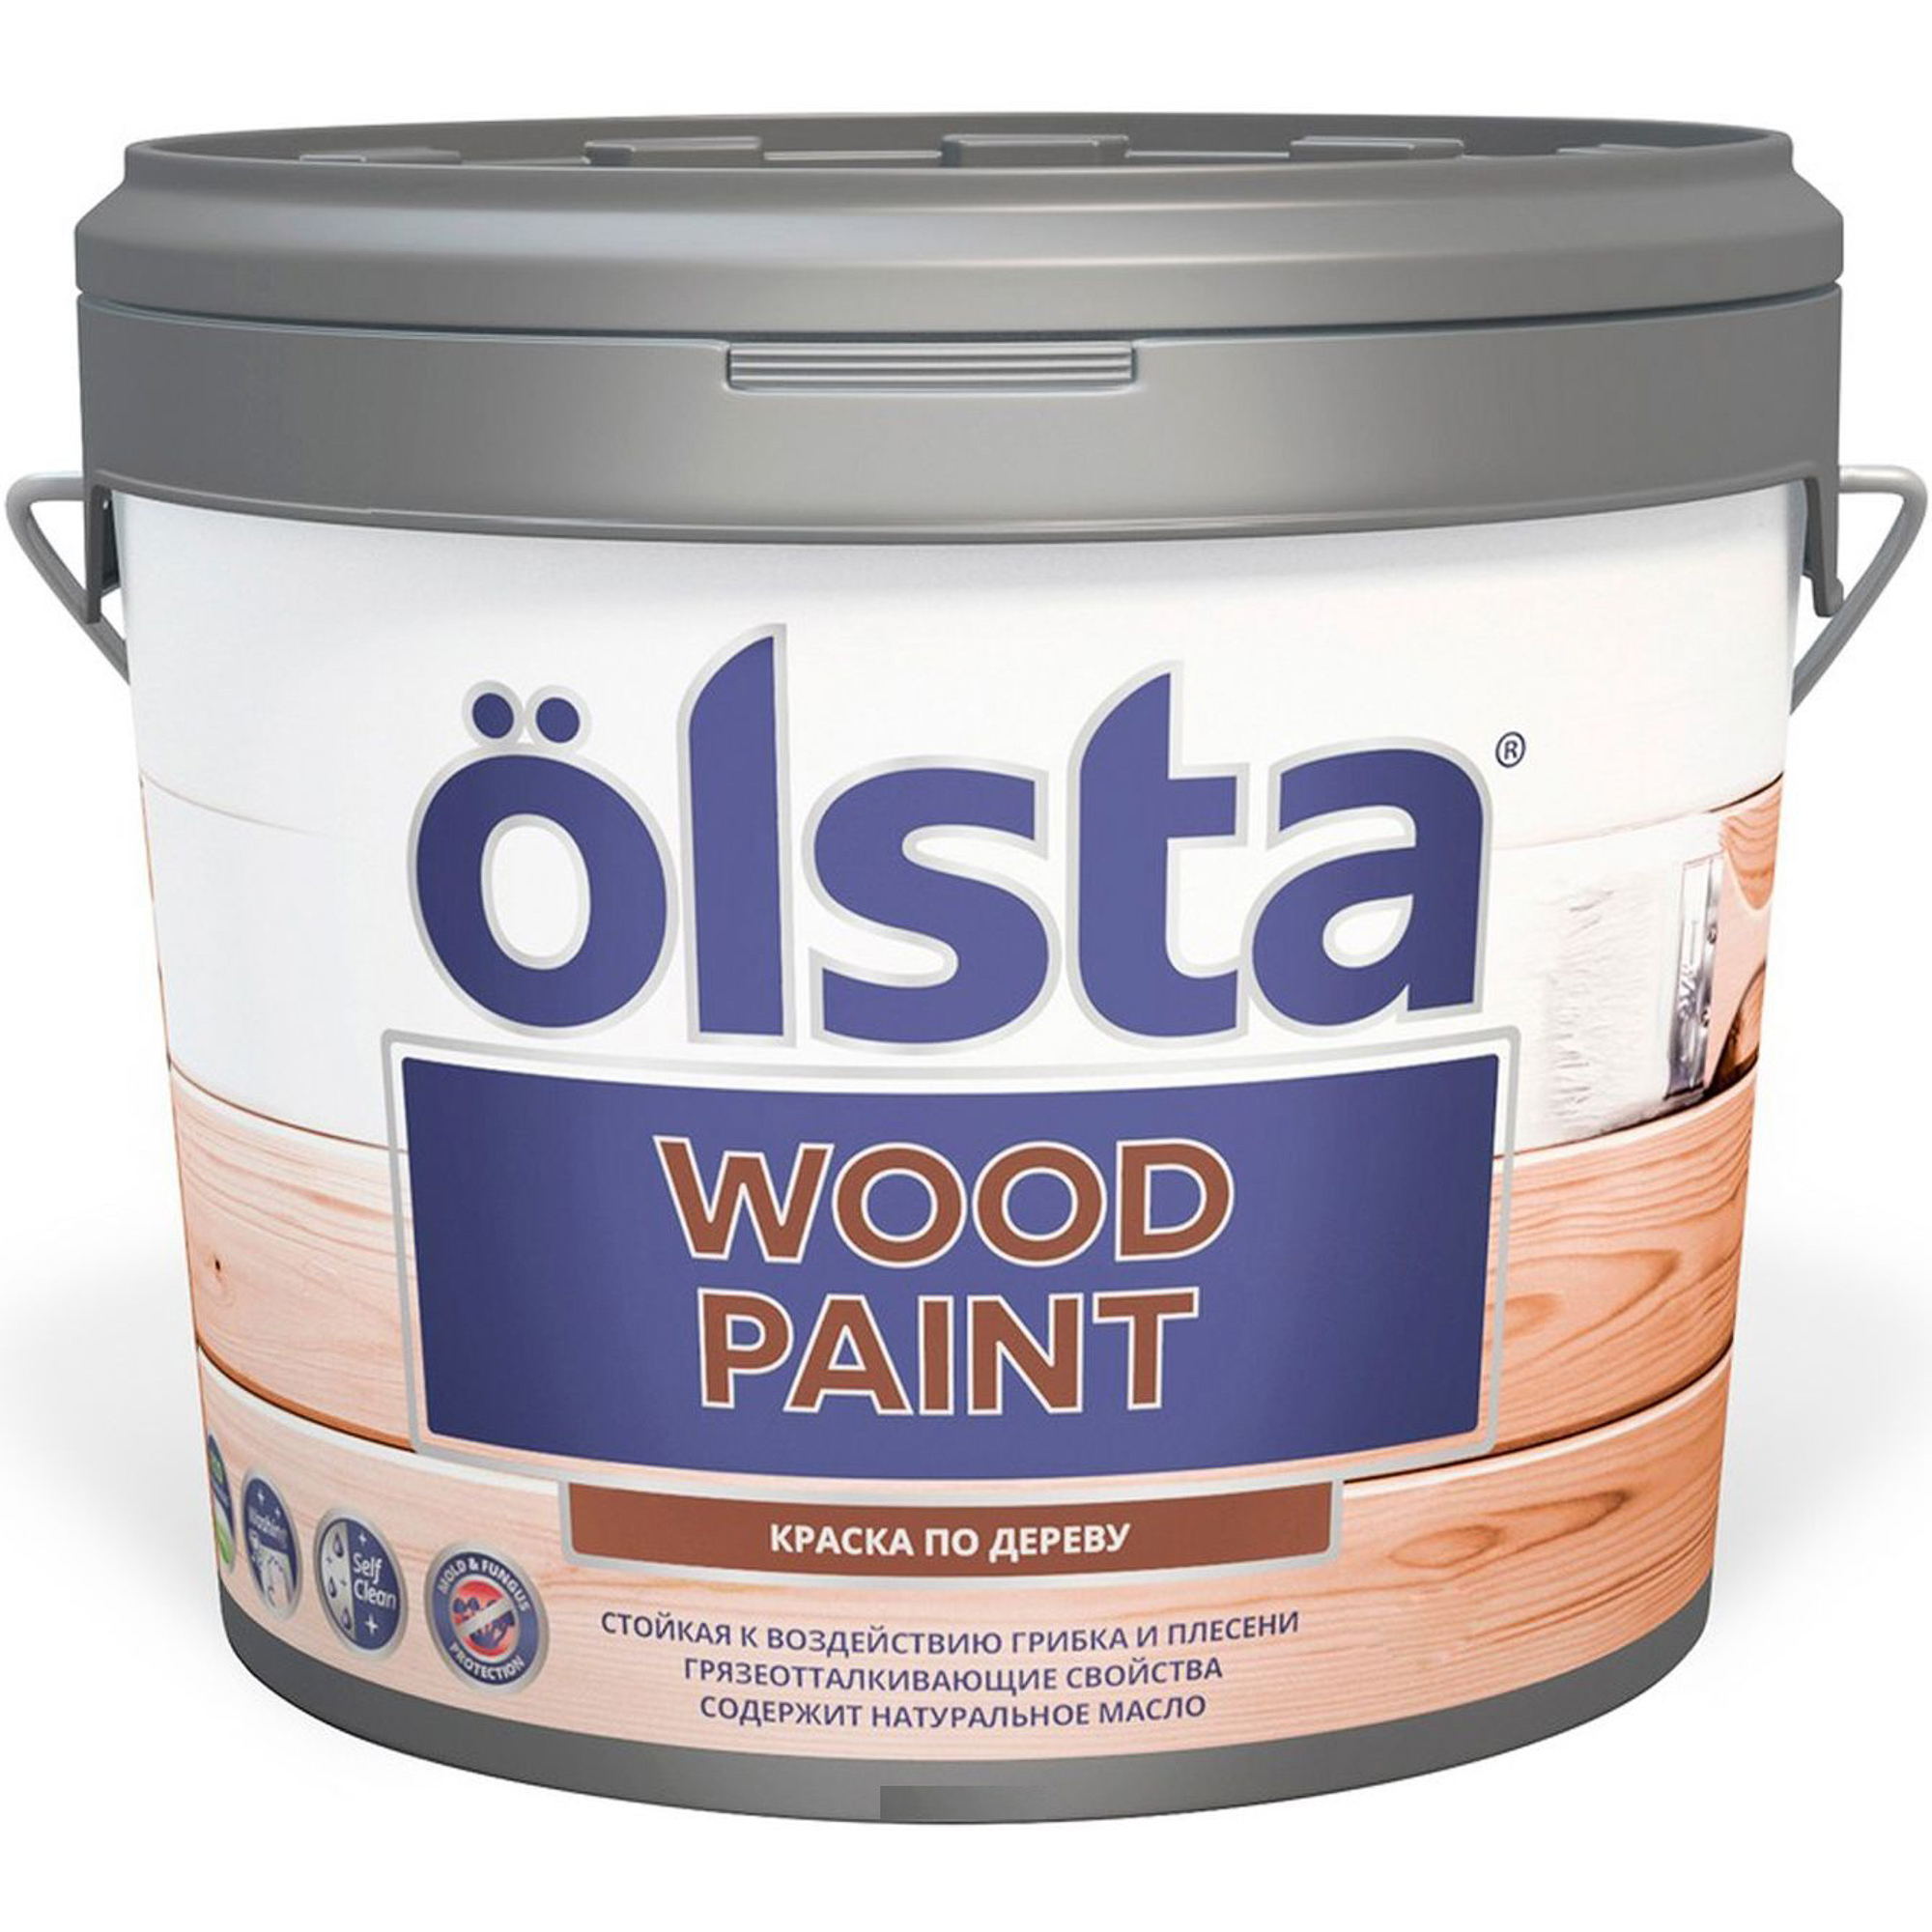 Краска Olsta wood paint для дерева a 2.7 л краска интерьерная mastergood акриловая матовая 1 2 кг белая